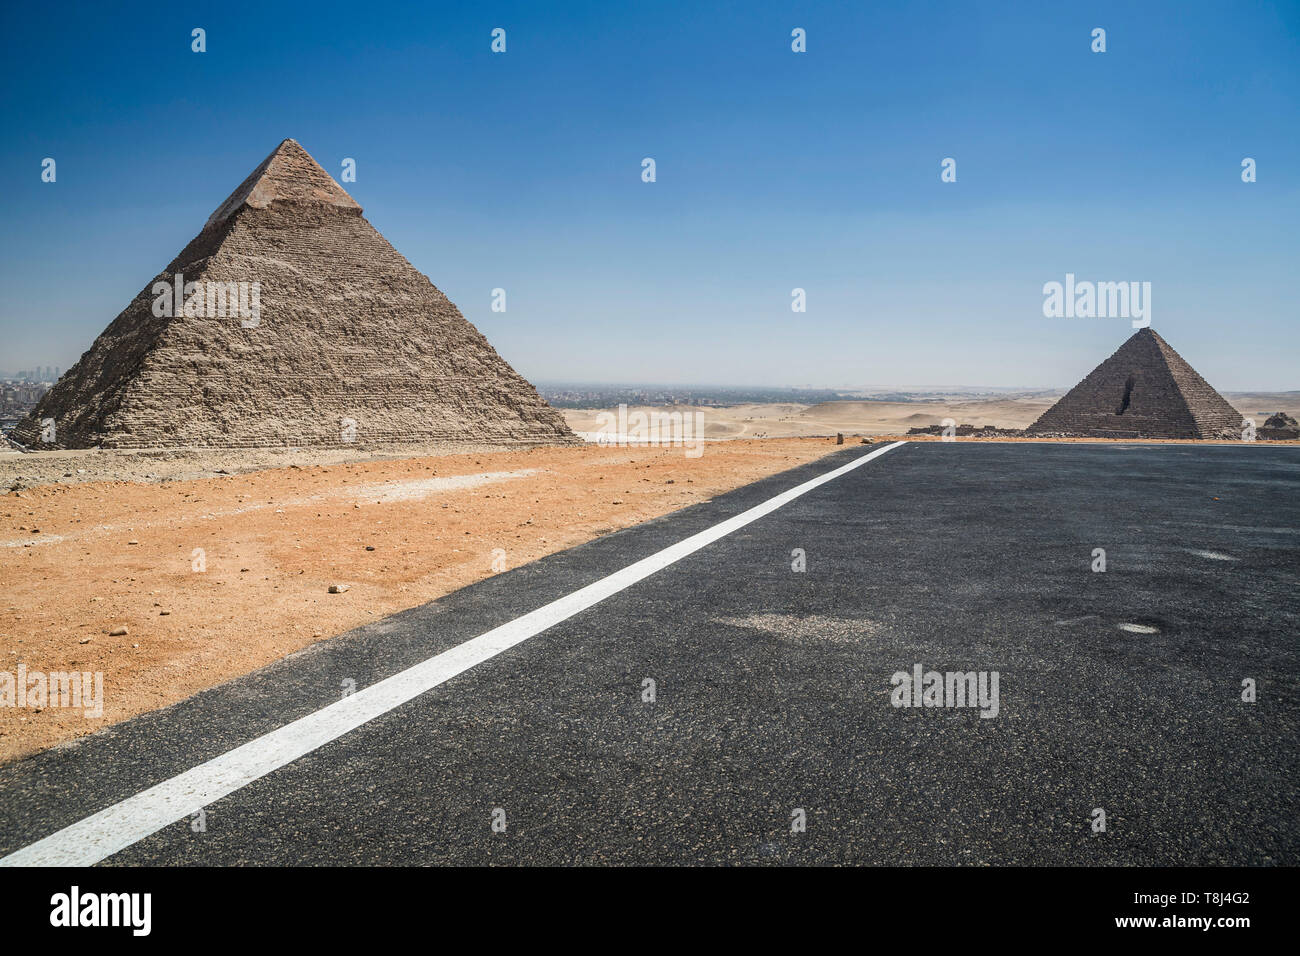 Héliport près des pyramides de Gizeh, près du Caire, Egypte Plateau Banque D'Images